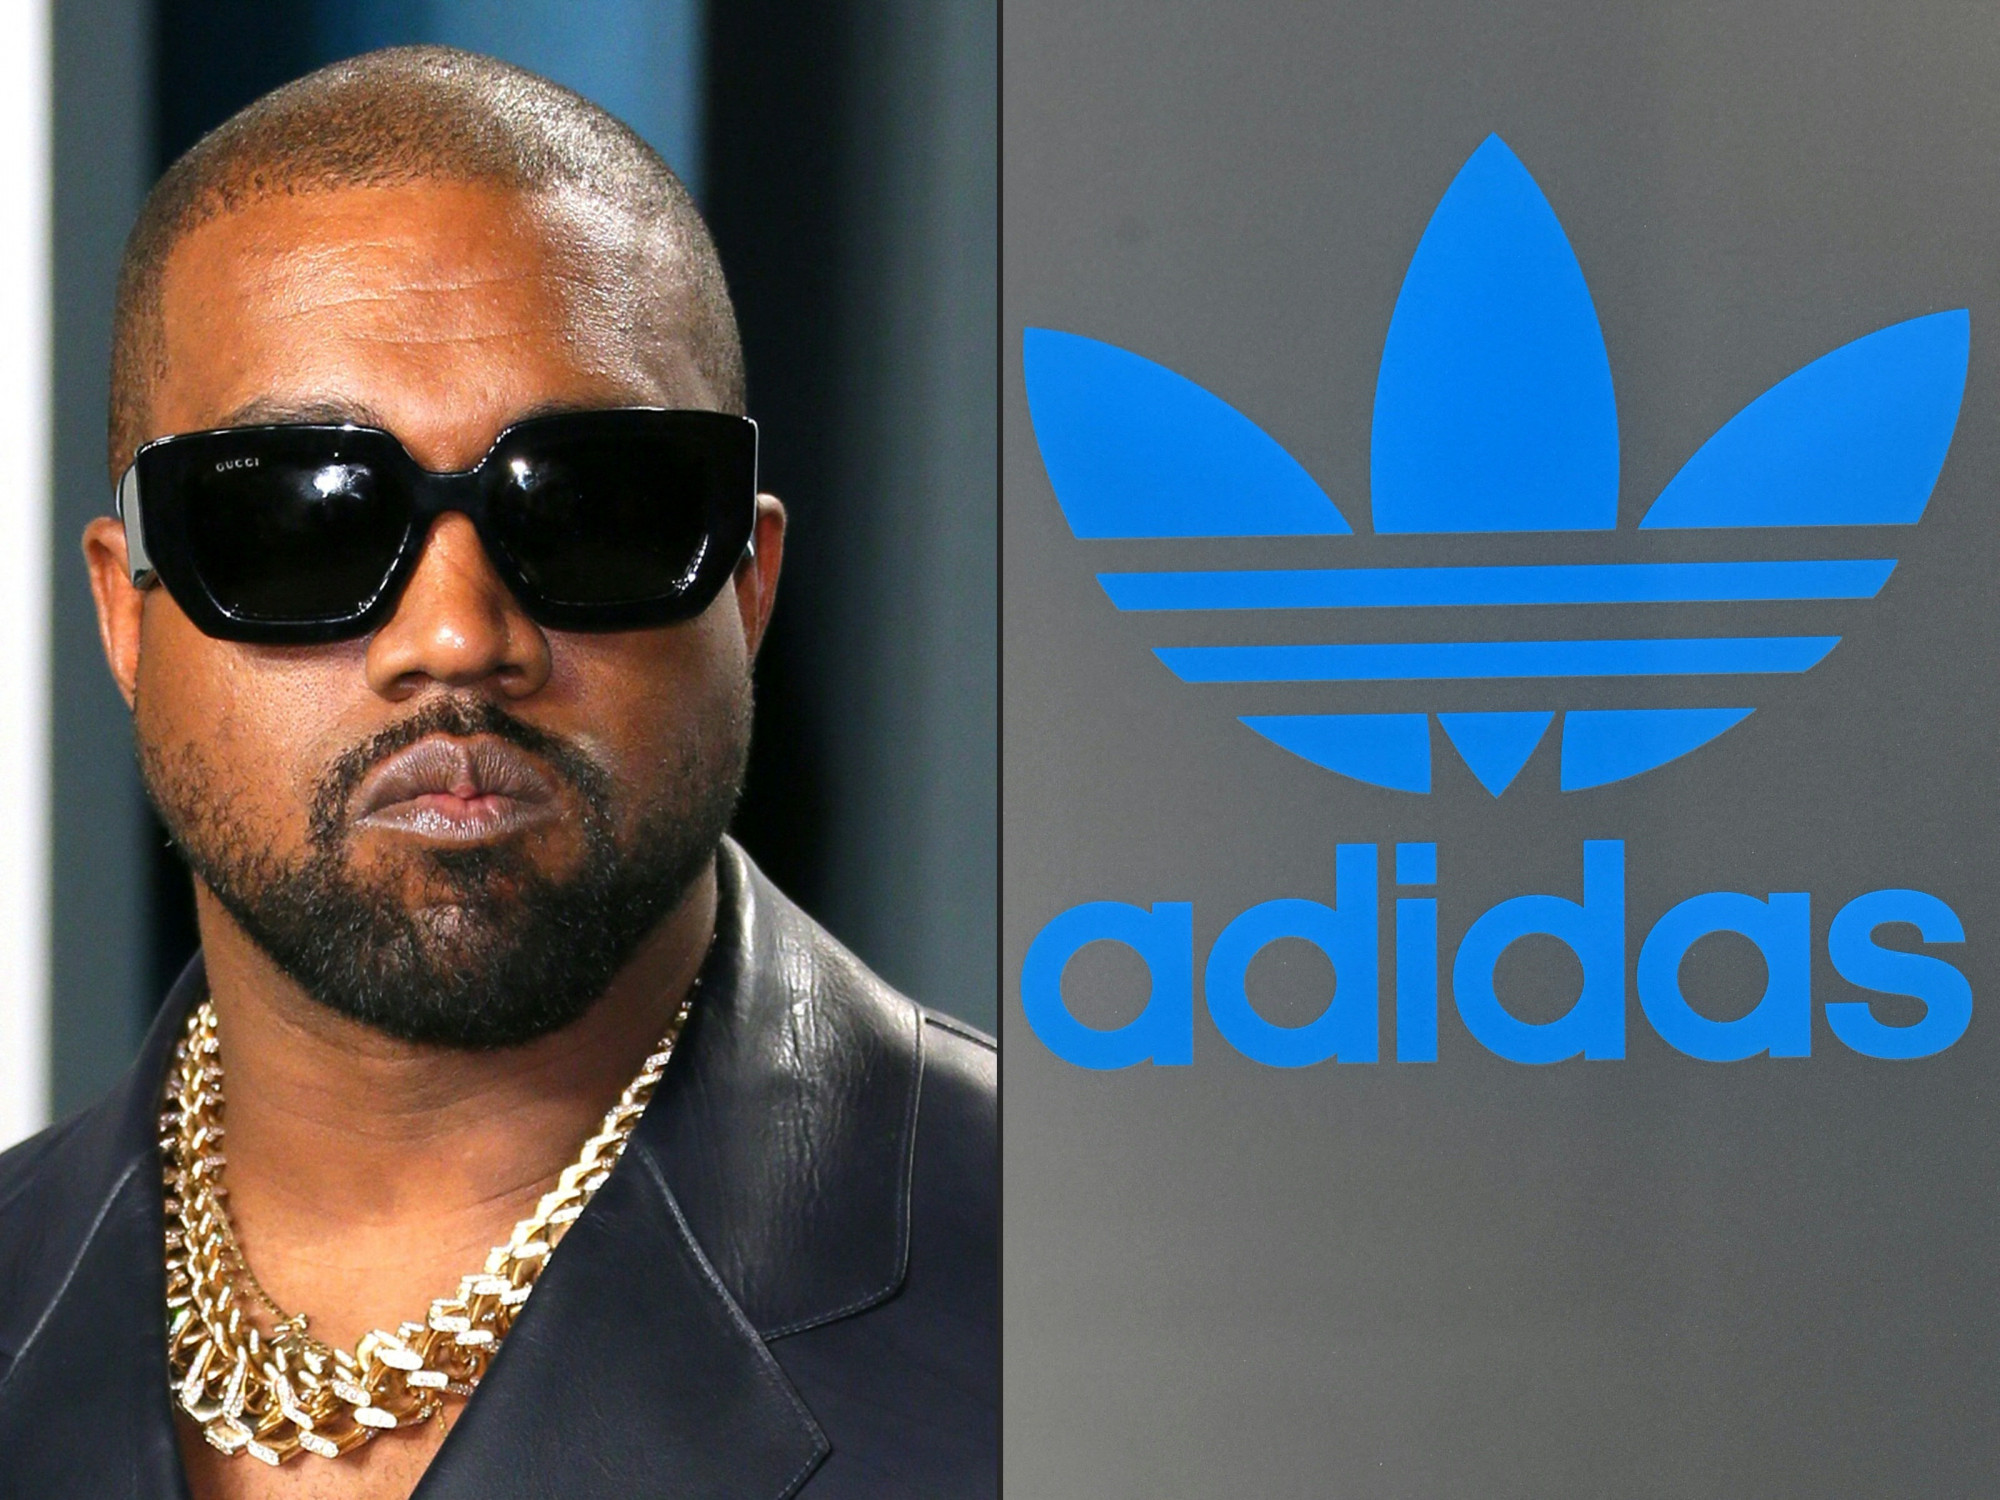 Az Adidas vezérigazgatója szerint nem is gondolta komolyan Kanye West az antiszemita kijelentéseit